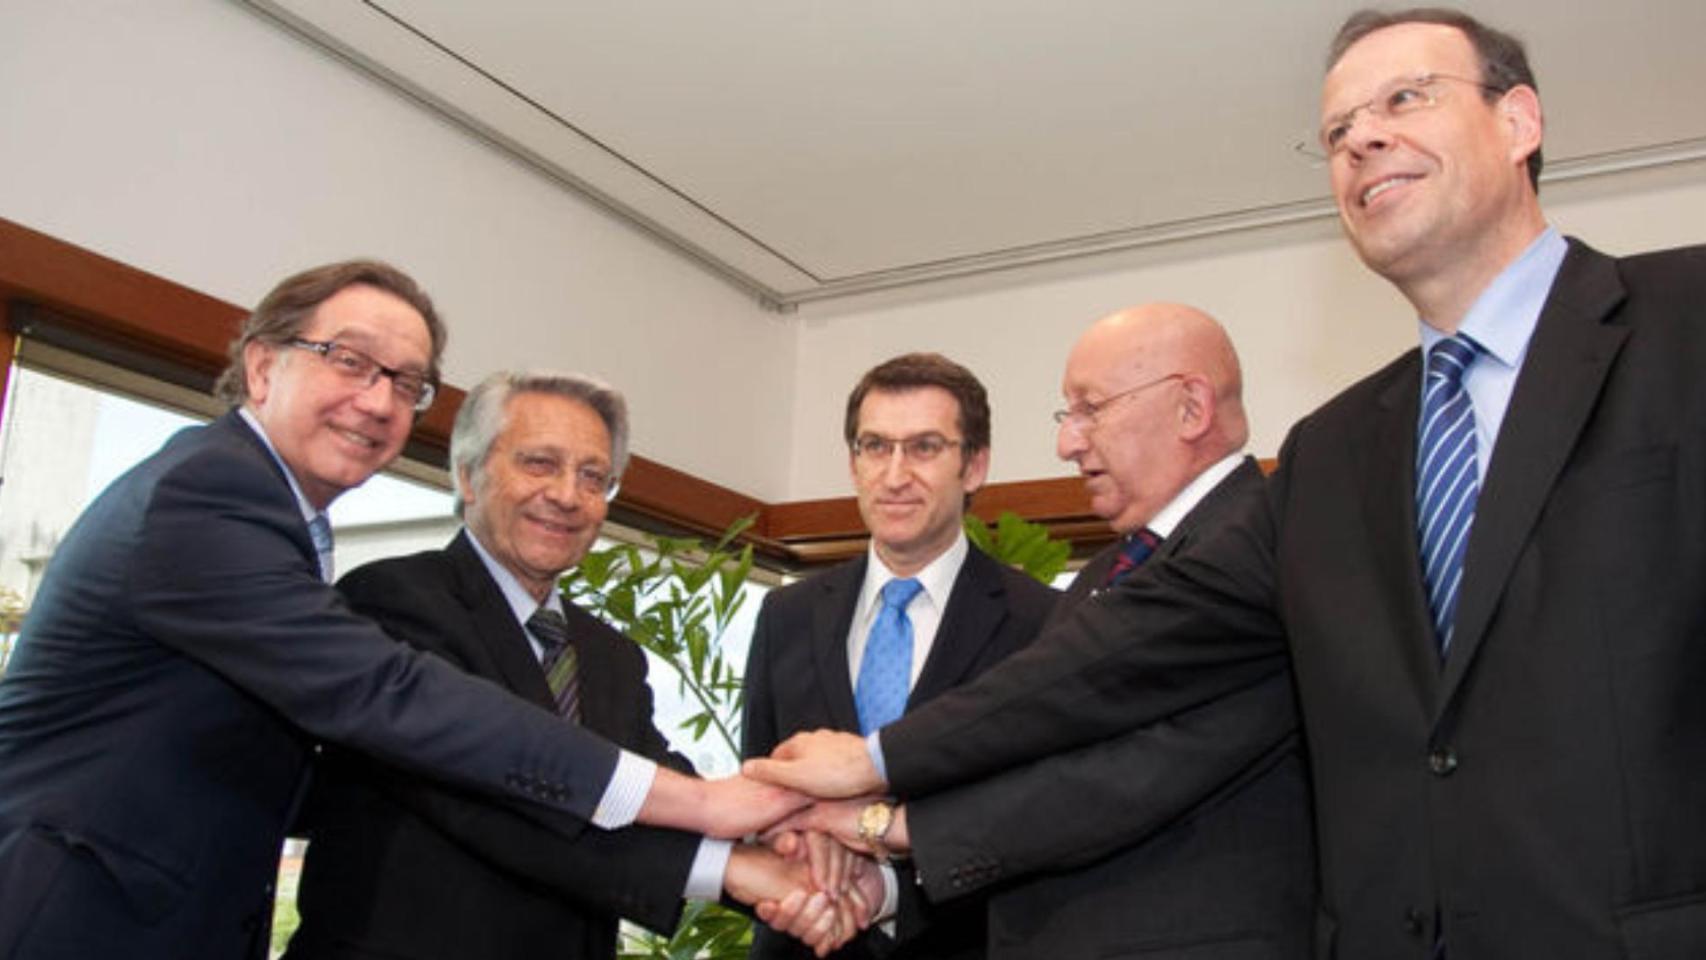 Imagen del acuerdo entre Caixa Galicia y Caixa Nova.